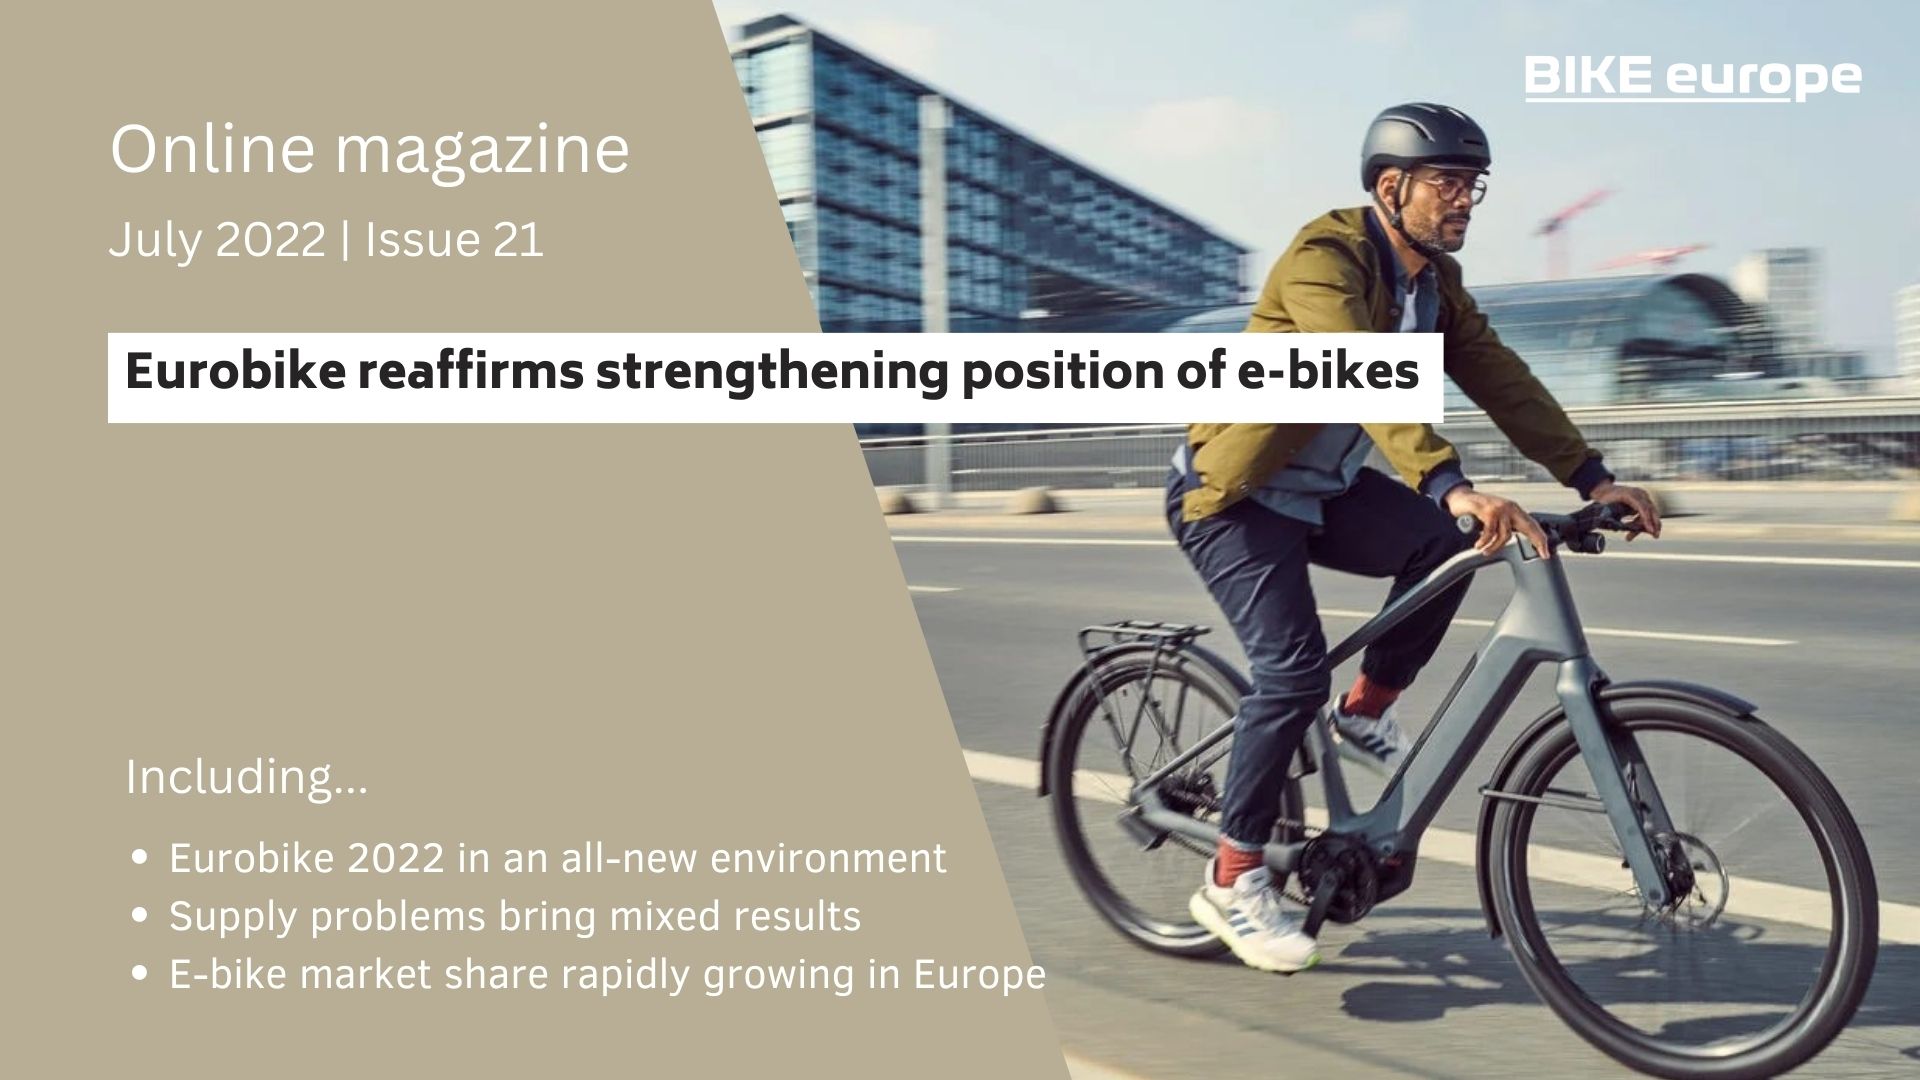 Online Magazine Eurobike reaffirms strengthening position of e-bikes